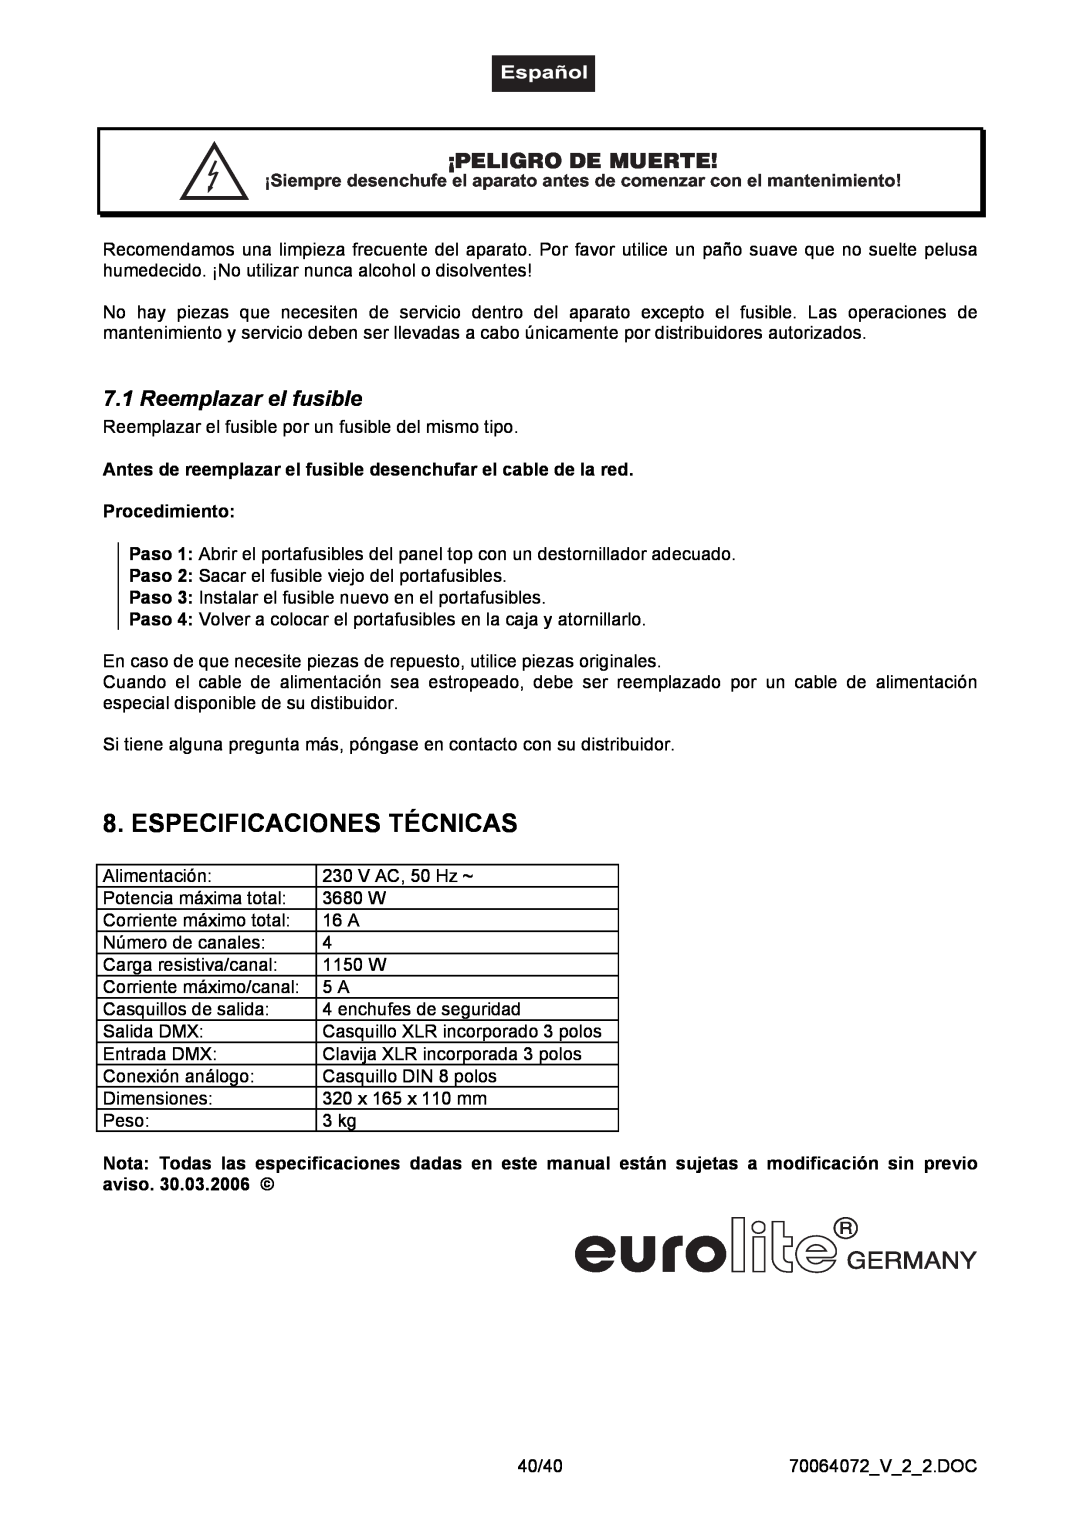 EuroLite Cases EDX-4 user manual Especificaciones Técnicas, ¡Peligro De Muerte, Reemplazar el fusible, Procedimiento 